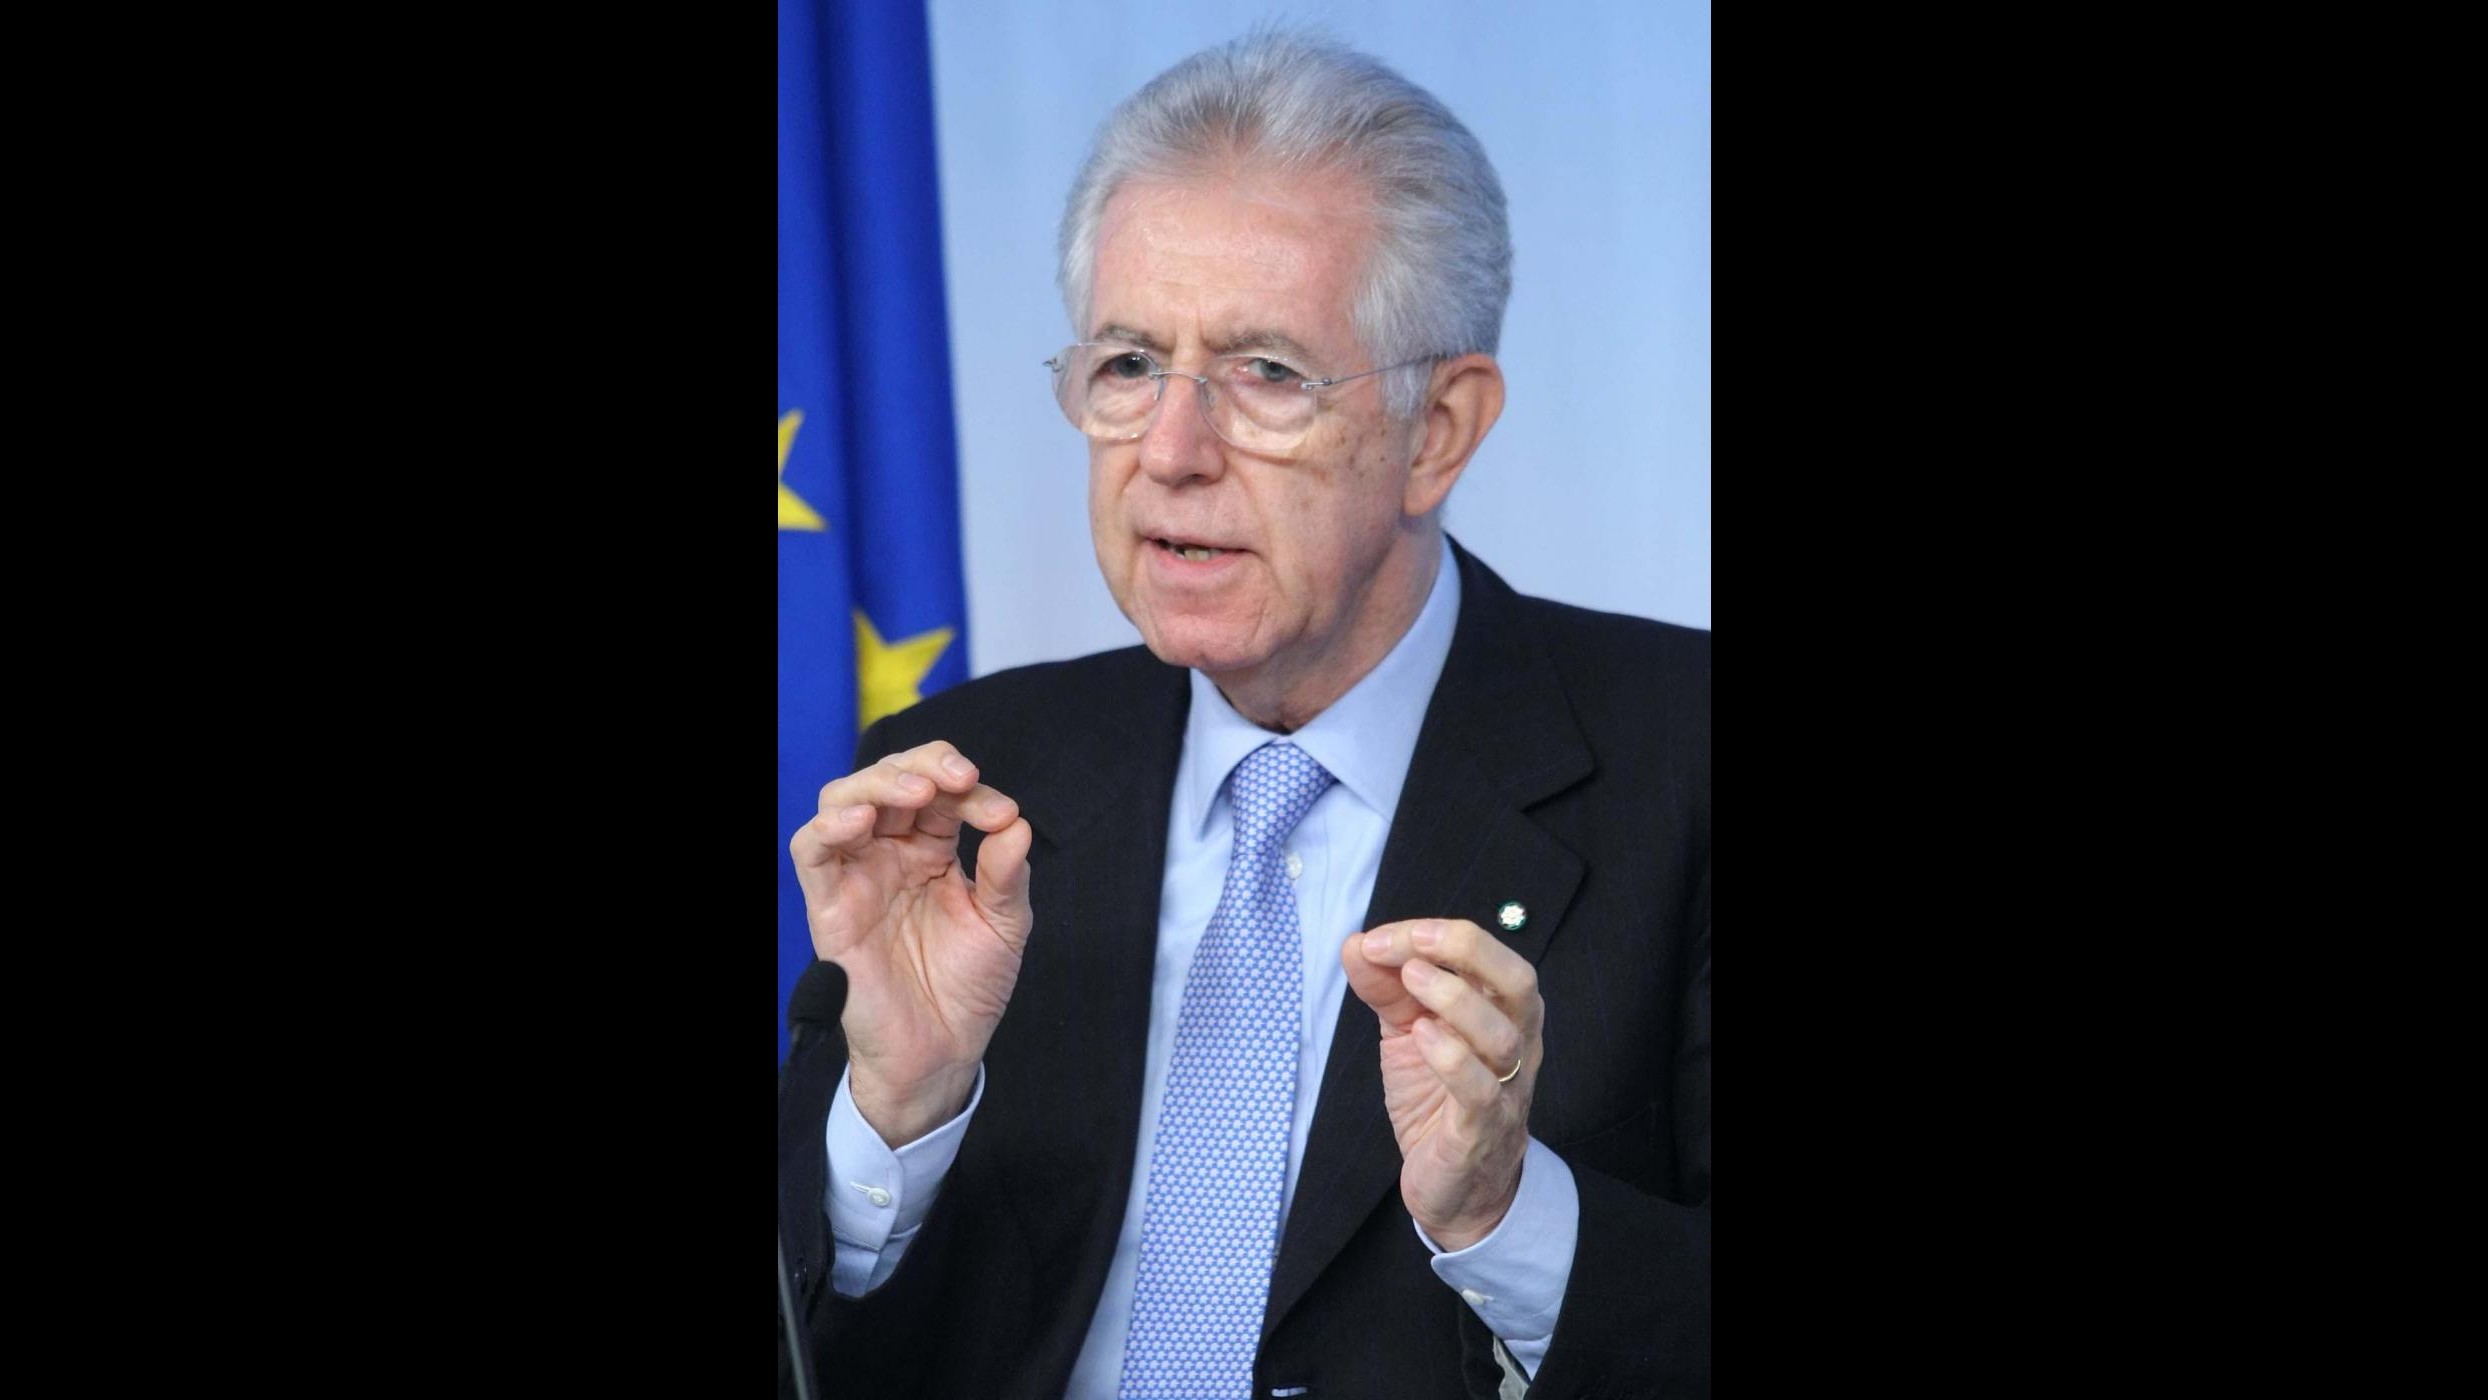 Mafia, Monti solidale con Napolitano: Attacco strumentale, Paese reagirà